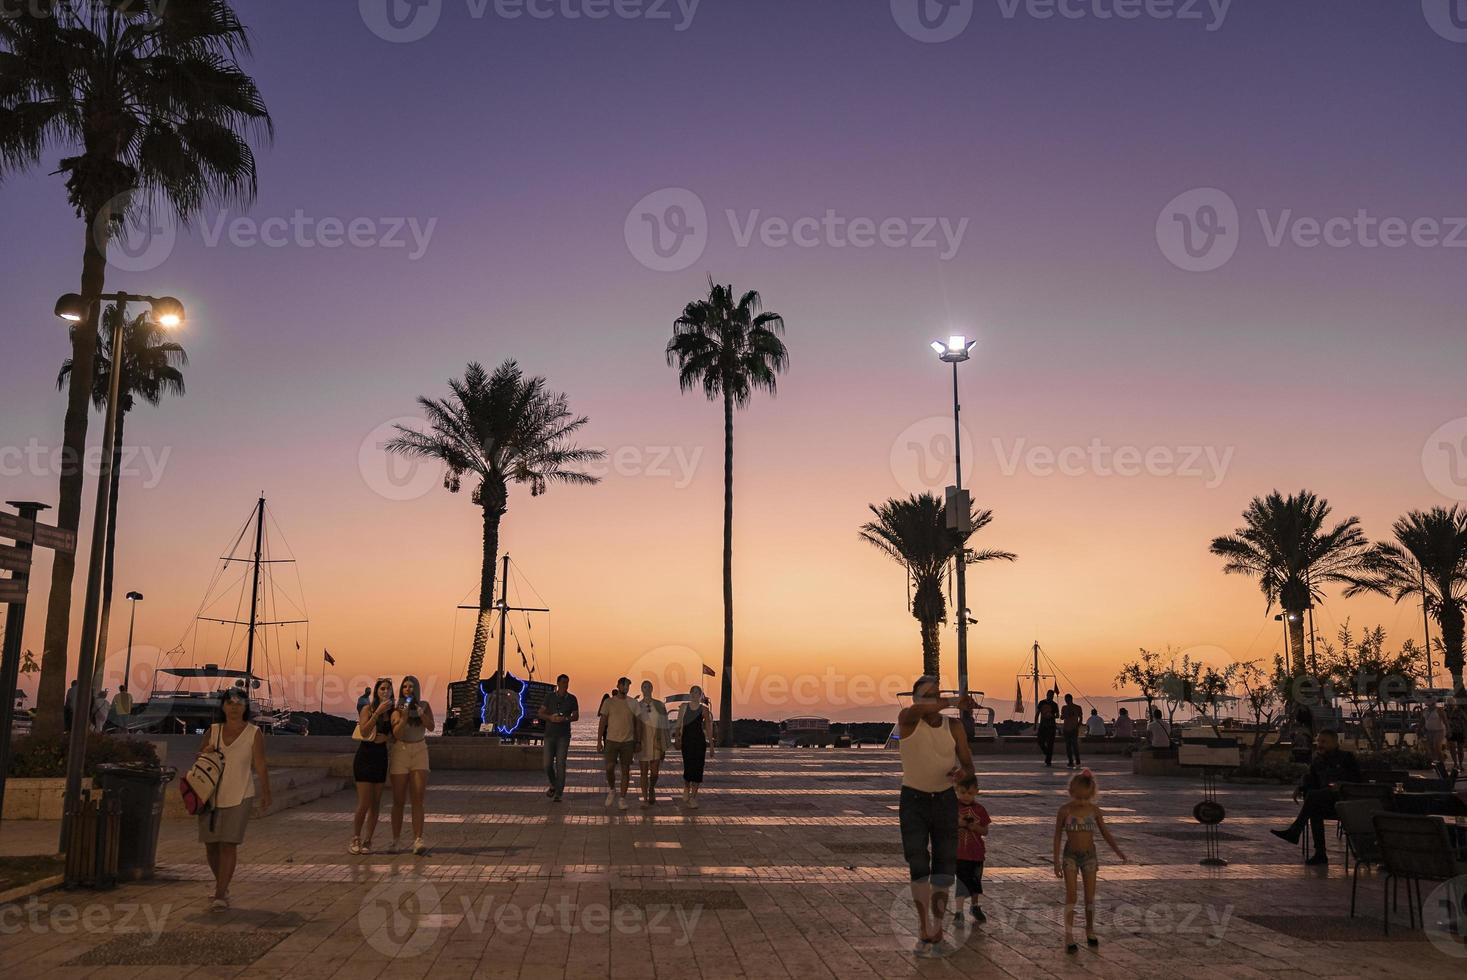 turisti a piedi su sentiero principale in direzione palma alberi in crescita a spiaggia foto